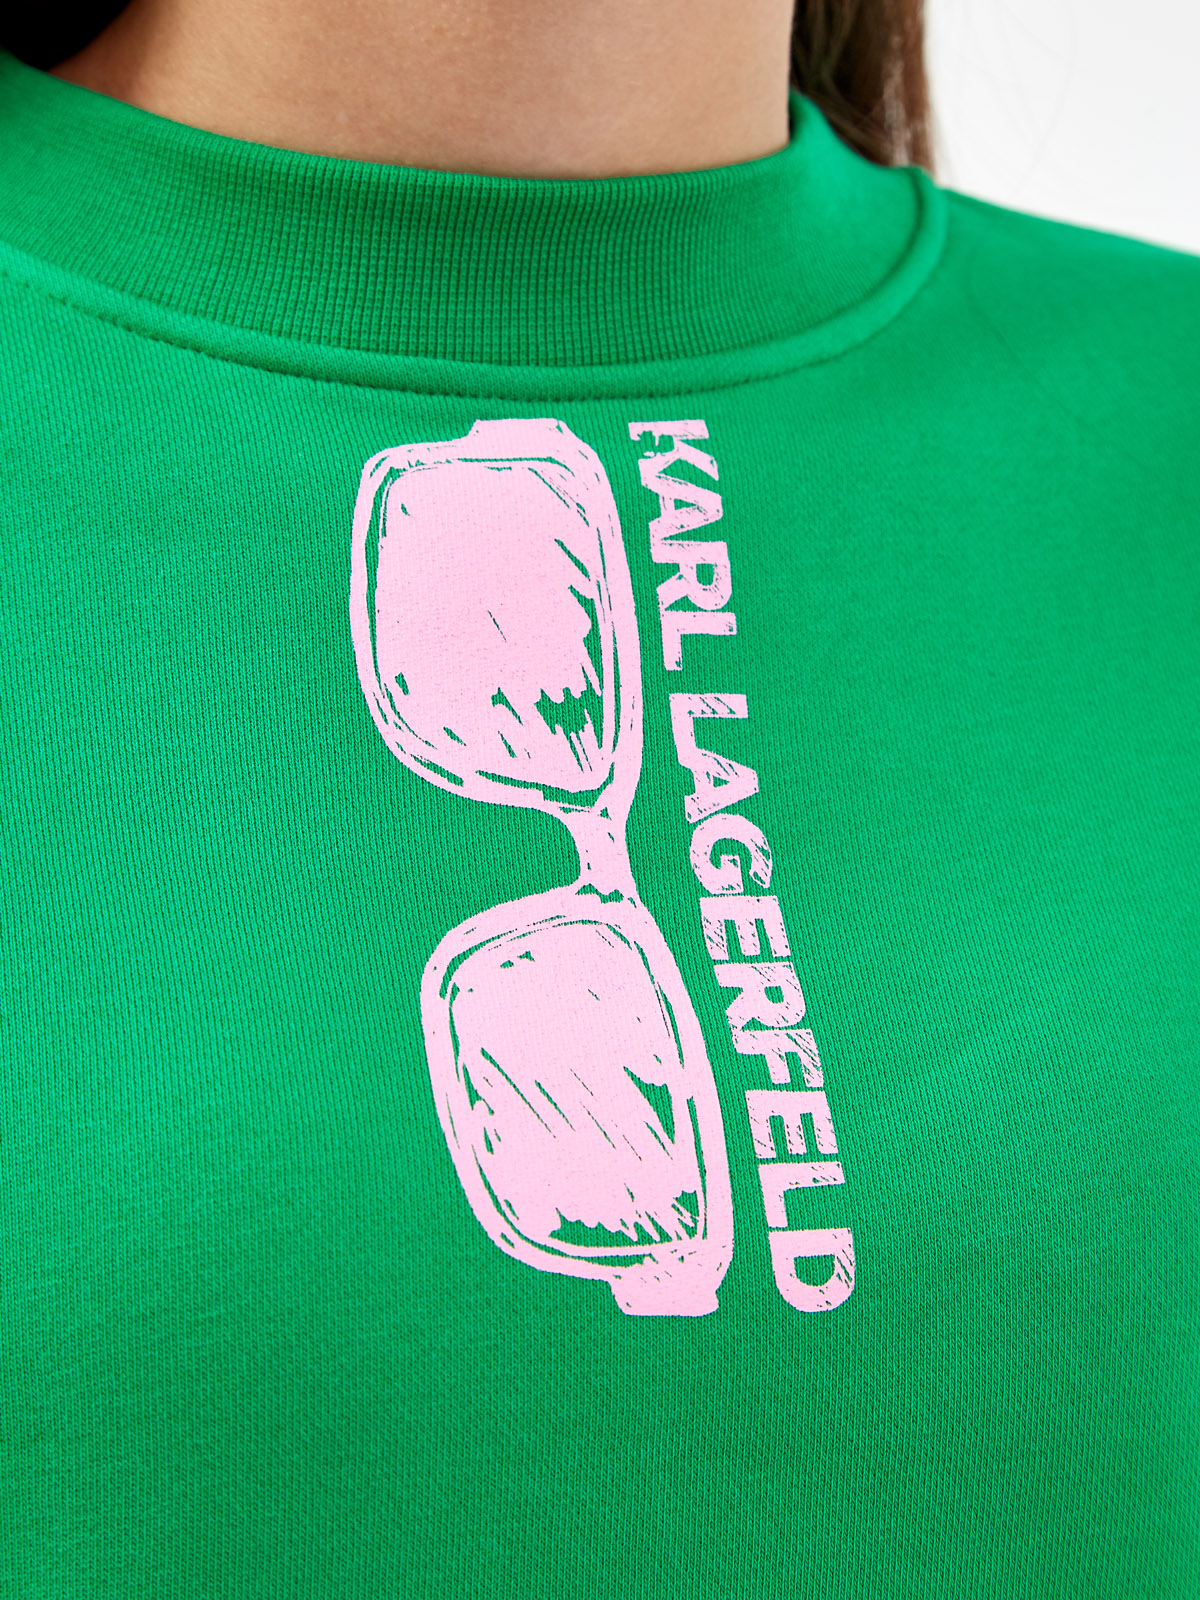 Свитшот из мягкого хлопкового футера с принтом KARL LAGERFELD, цвет зеленый, размер S;M;L - фото 5